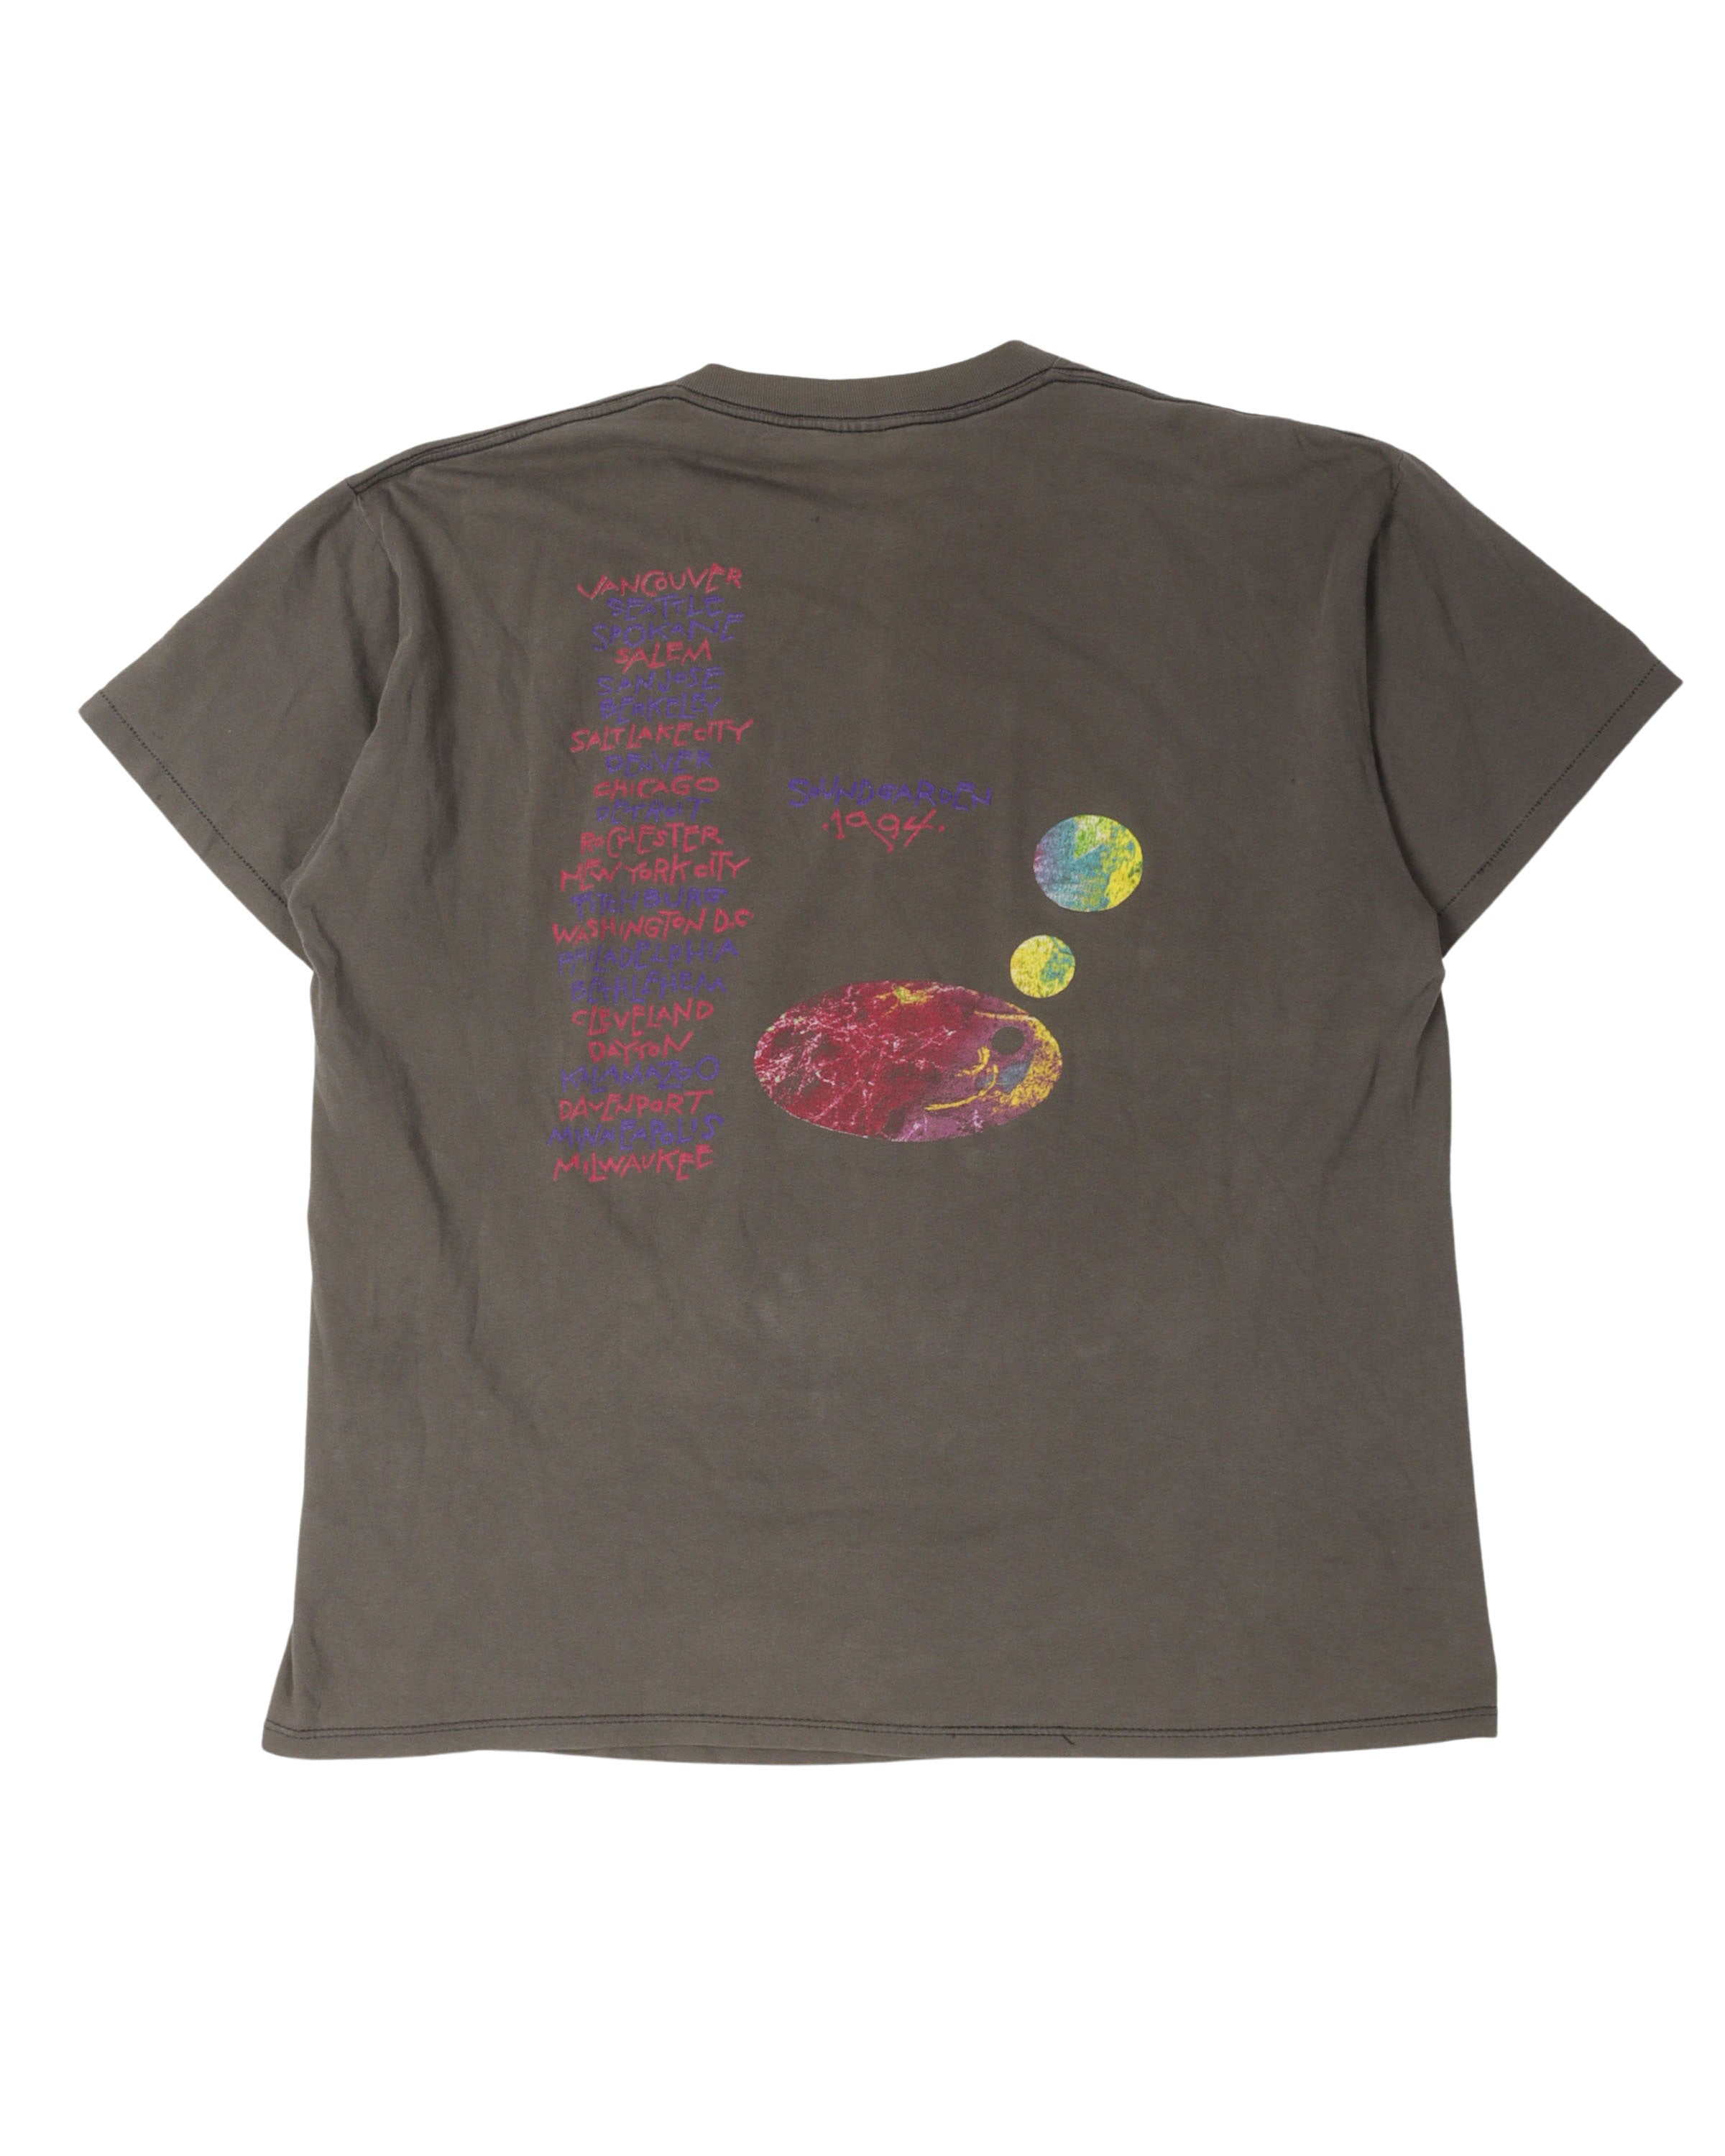 Soundgarden 1994 Tour T-Shirt